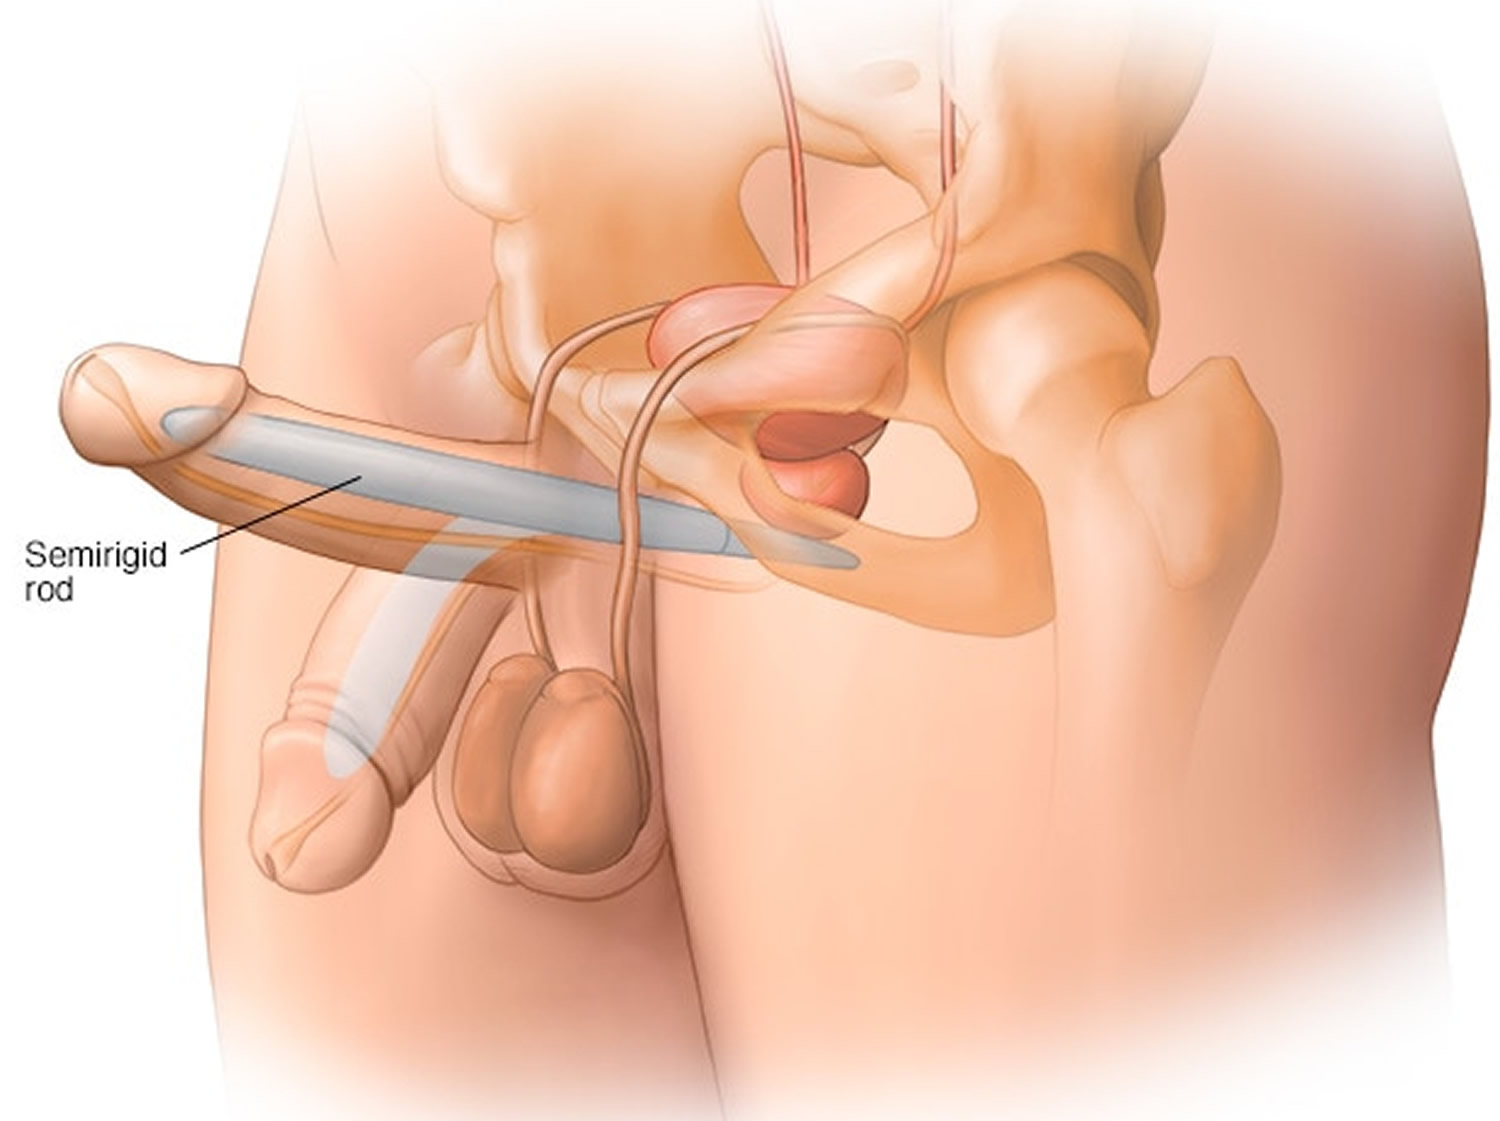 Penile implant semi-rigid